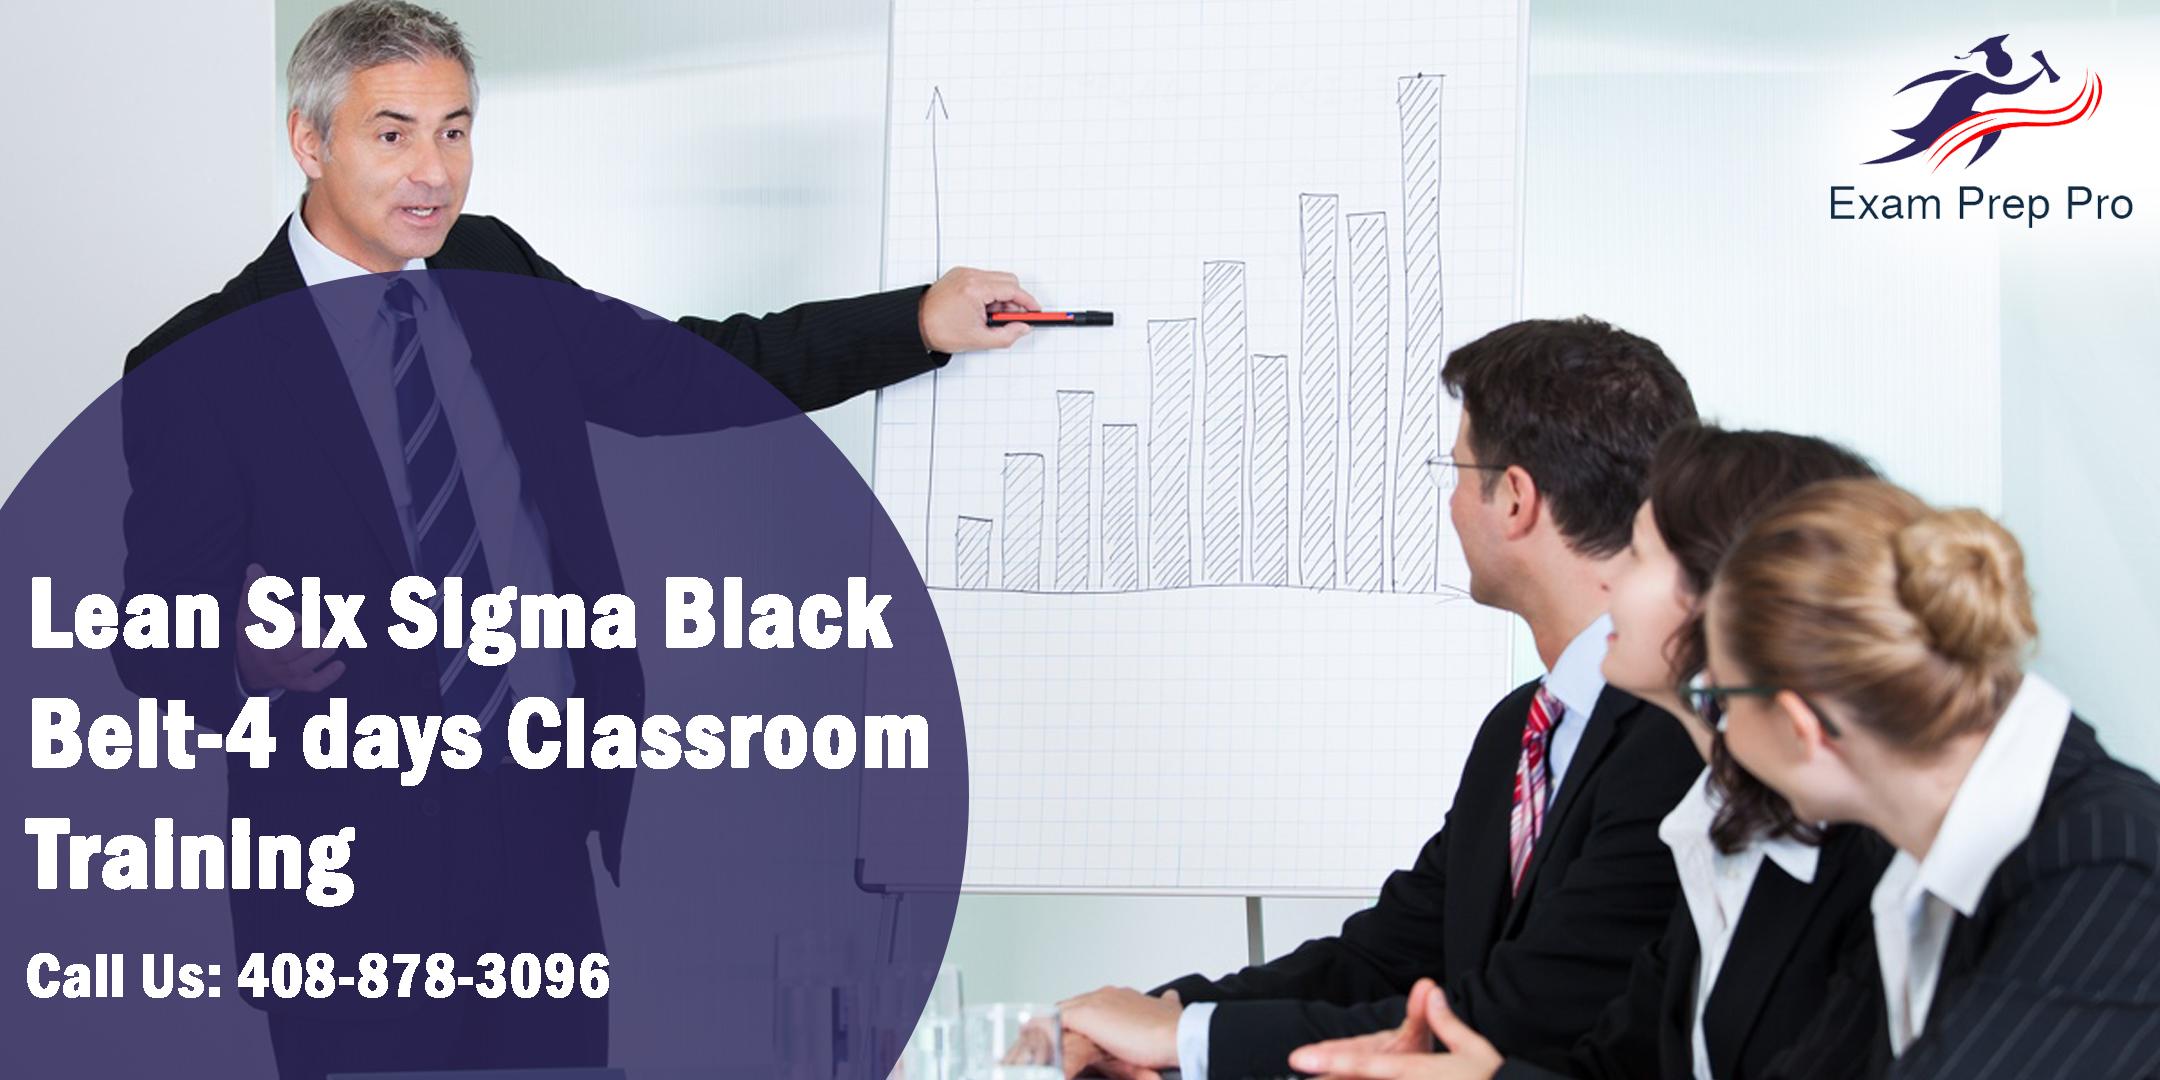 Lean Six Sigma Black Belt-4 days Classroom Training in Orlando,FL